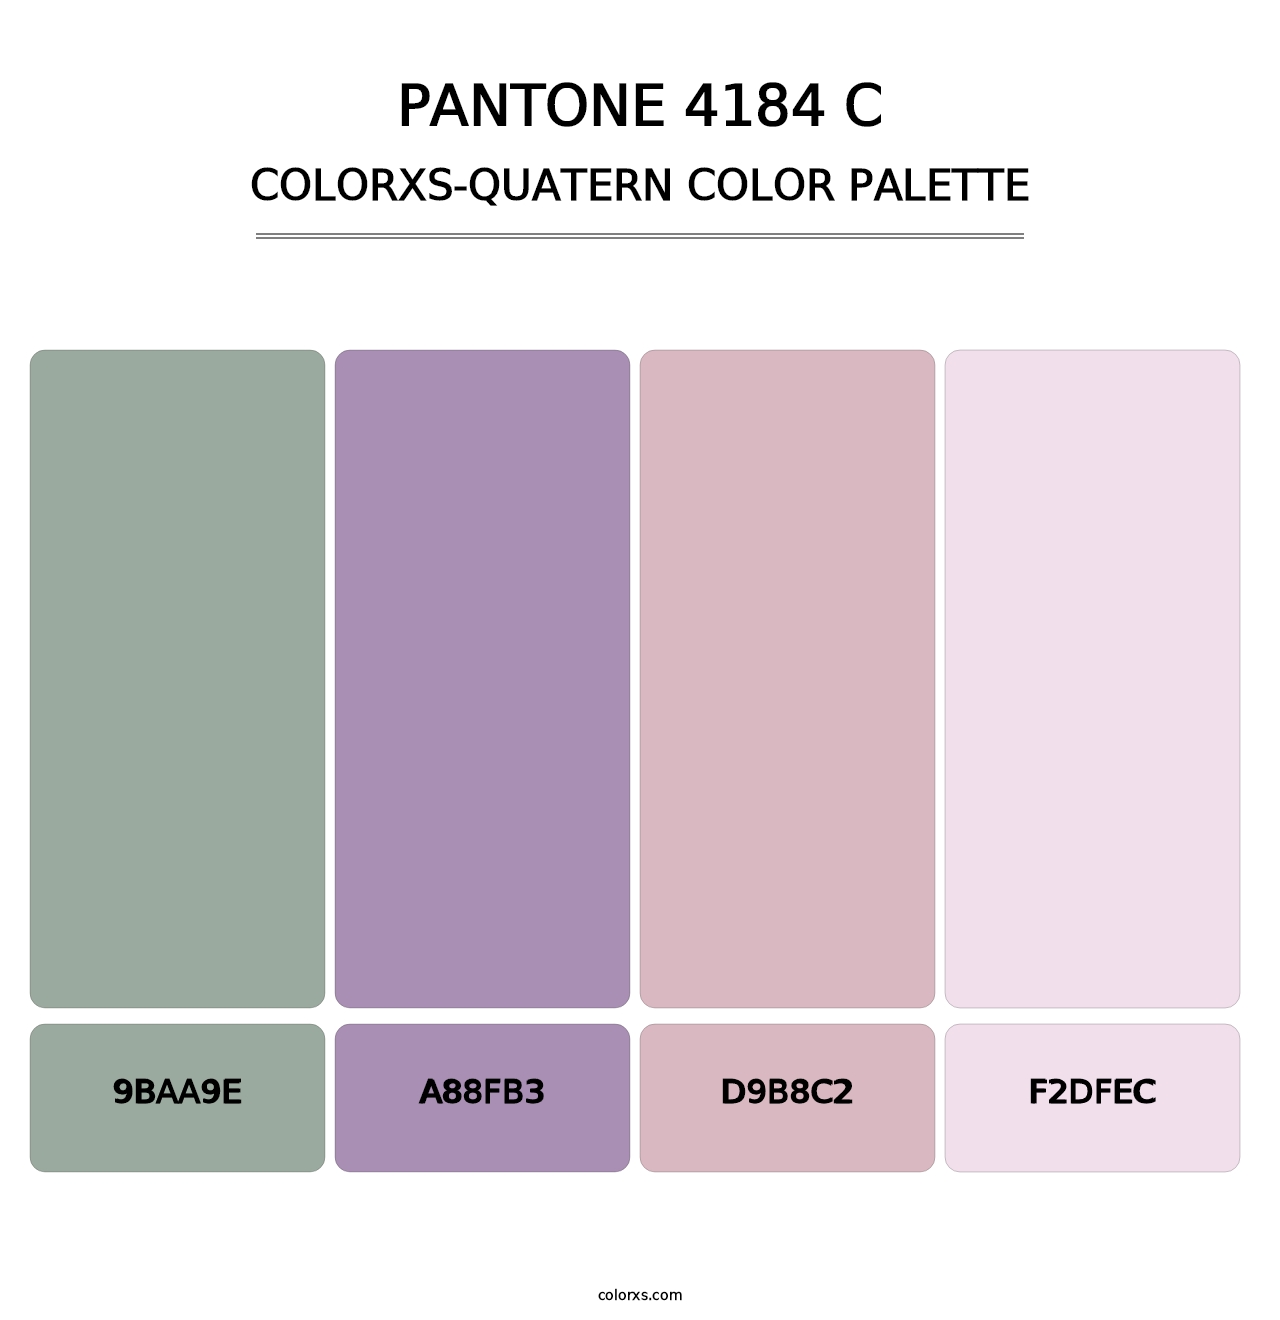 PANTONE 4184 C - Colorxs Quatern Palette